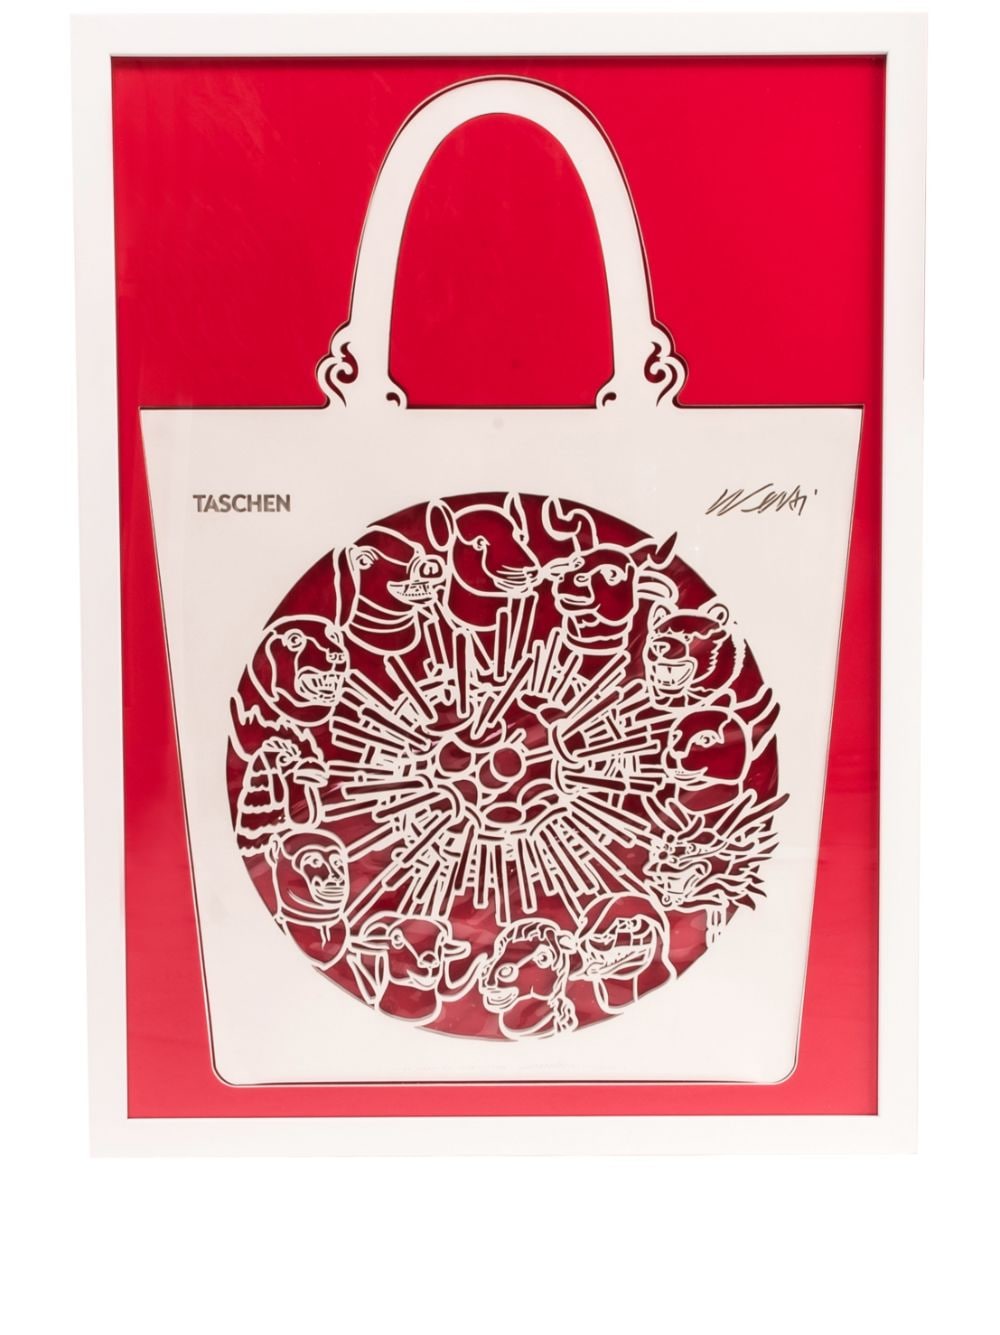 TASCHEN The Chine Bag 'Zodiac' by Ai Weiwei - Red von TASCHEN